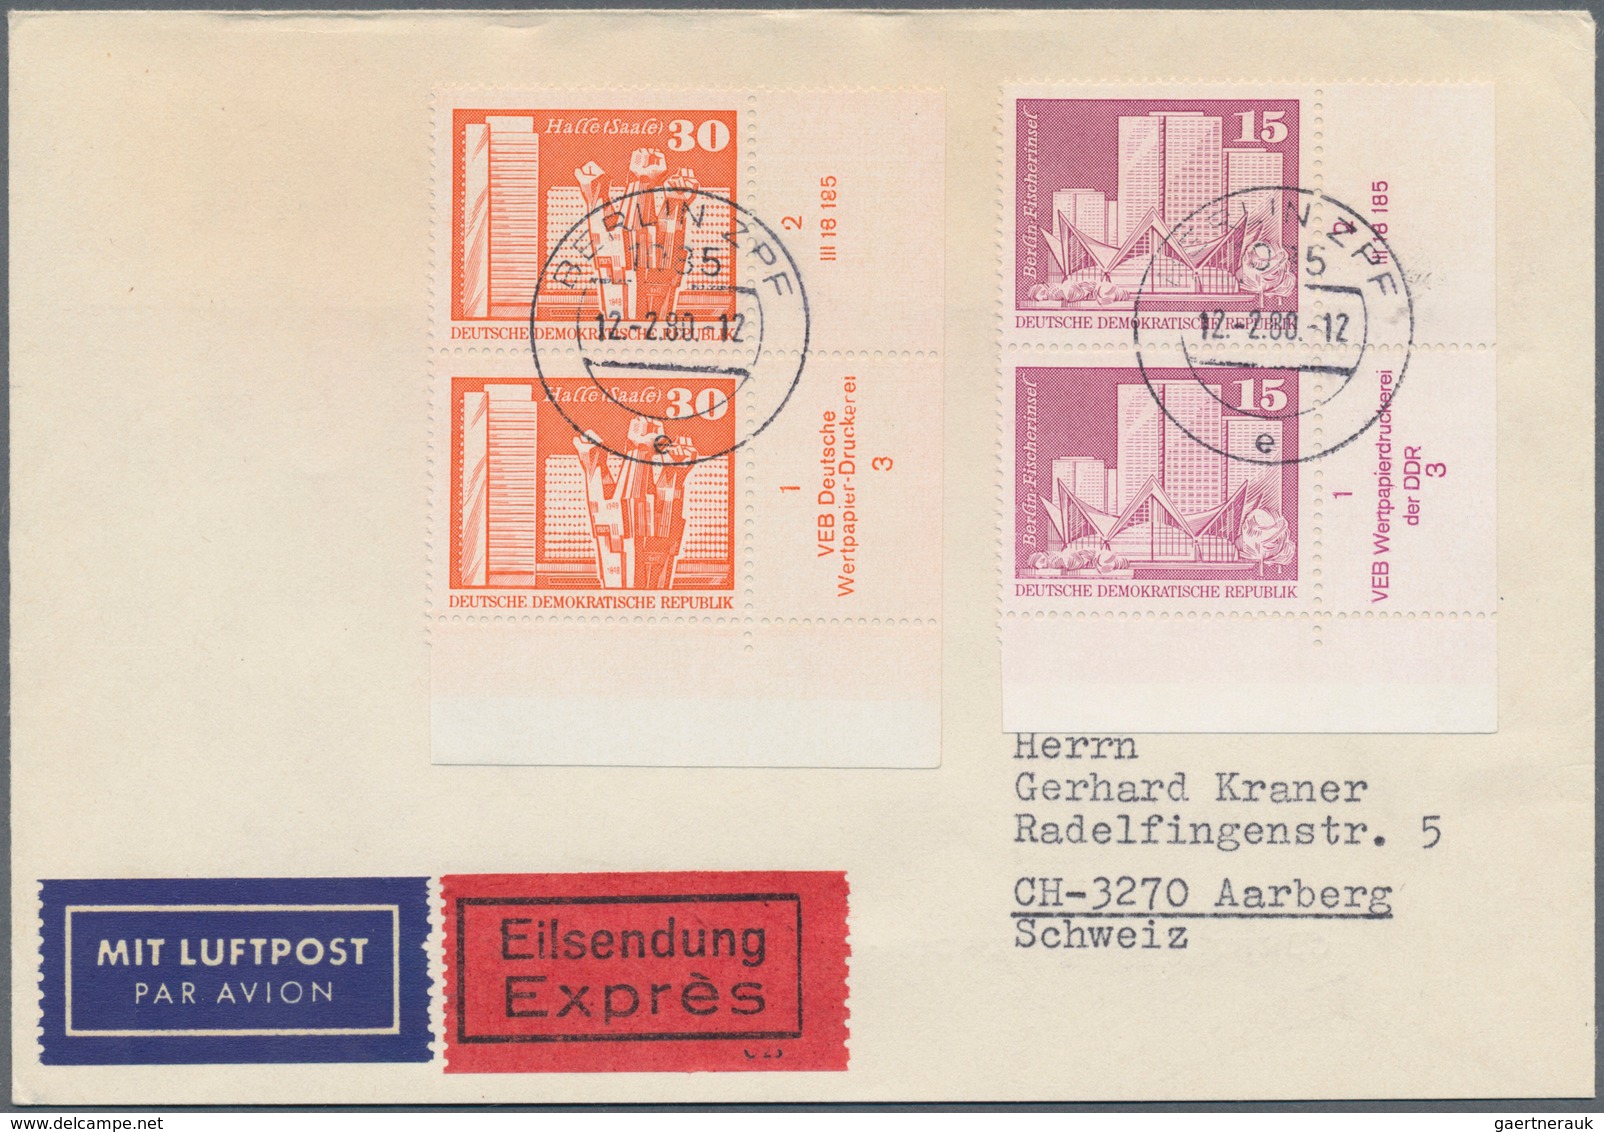 DDR: 1949/1990, umfangreicher Bestand von geschätzt ca. 1.200+ Briefen, Karten und Ganzsachen, dabei